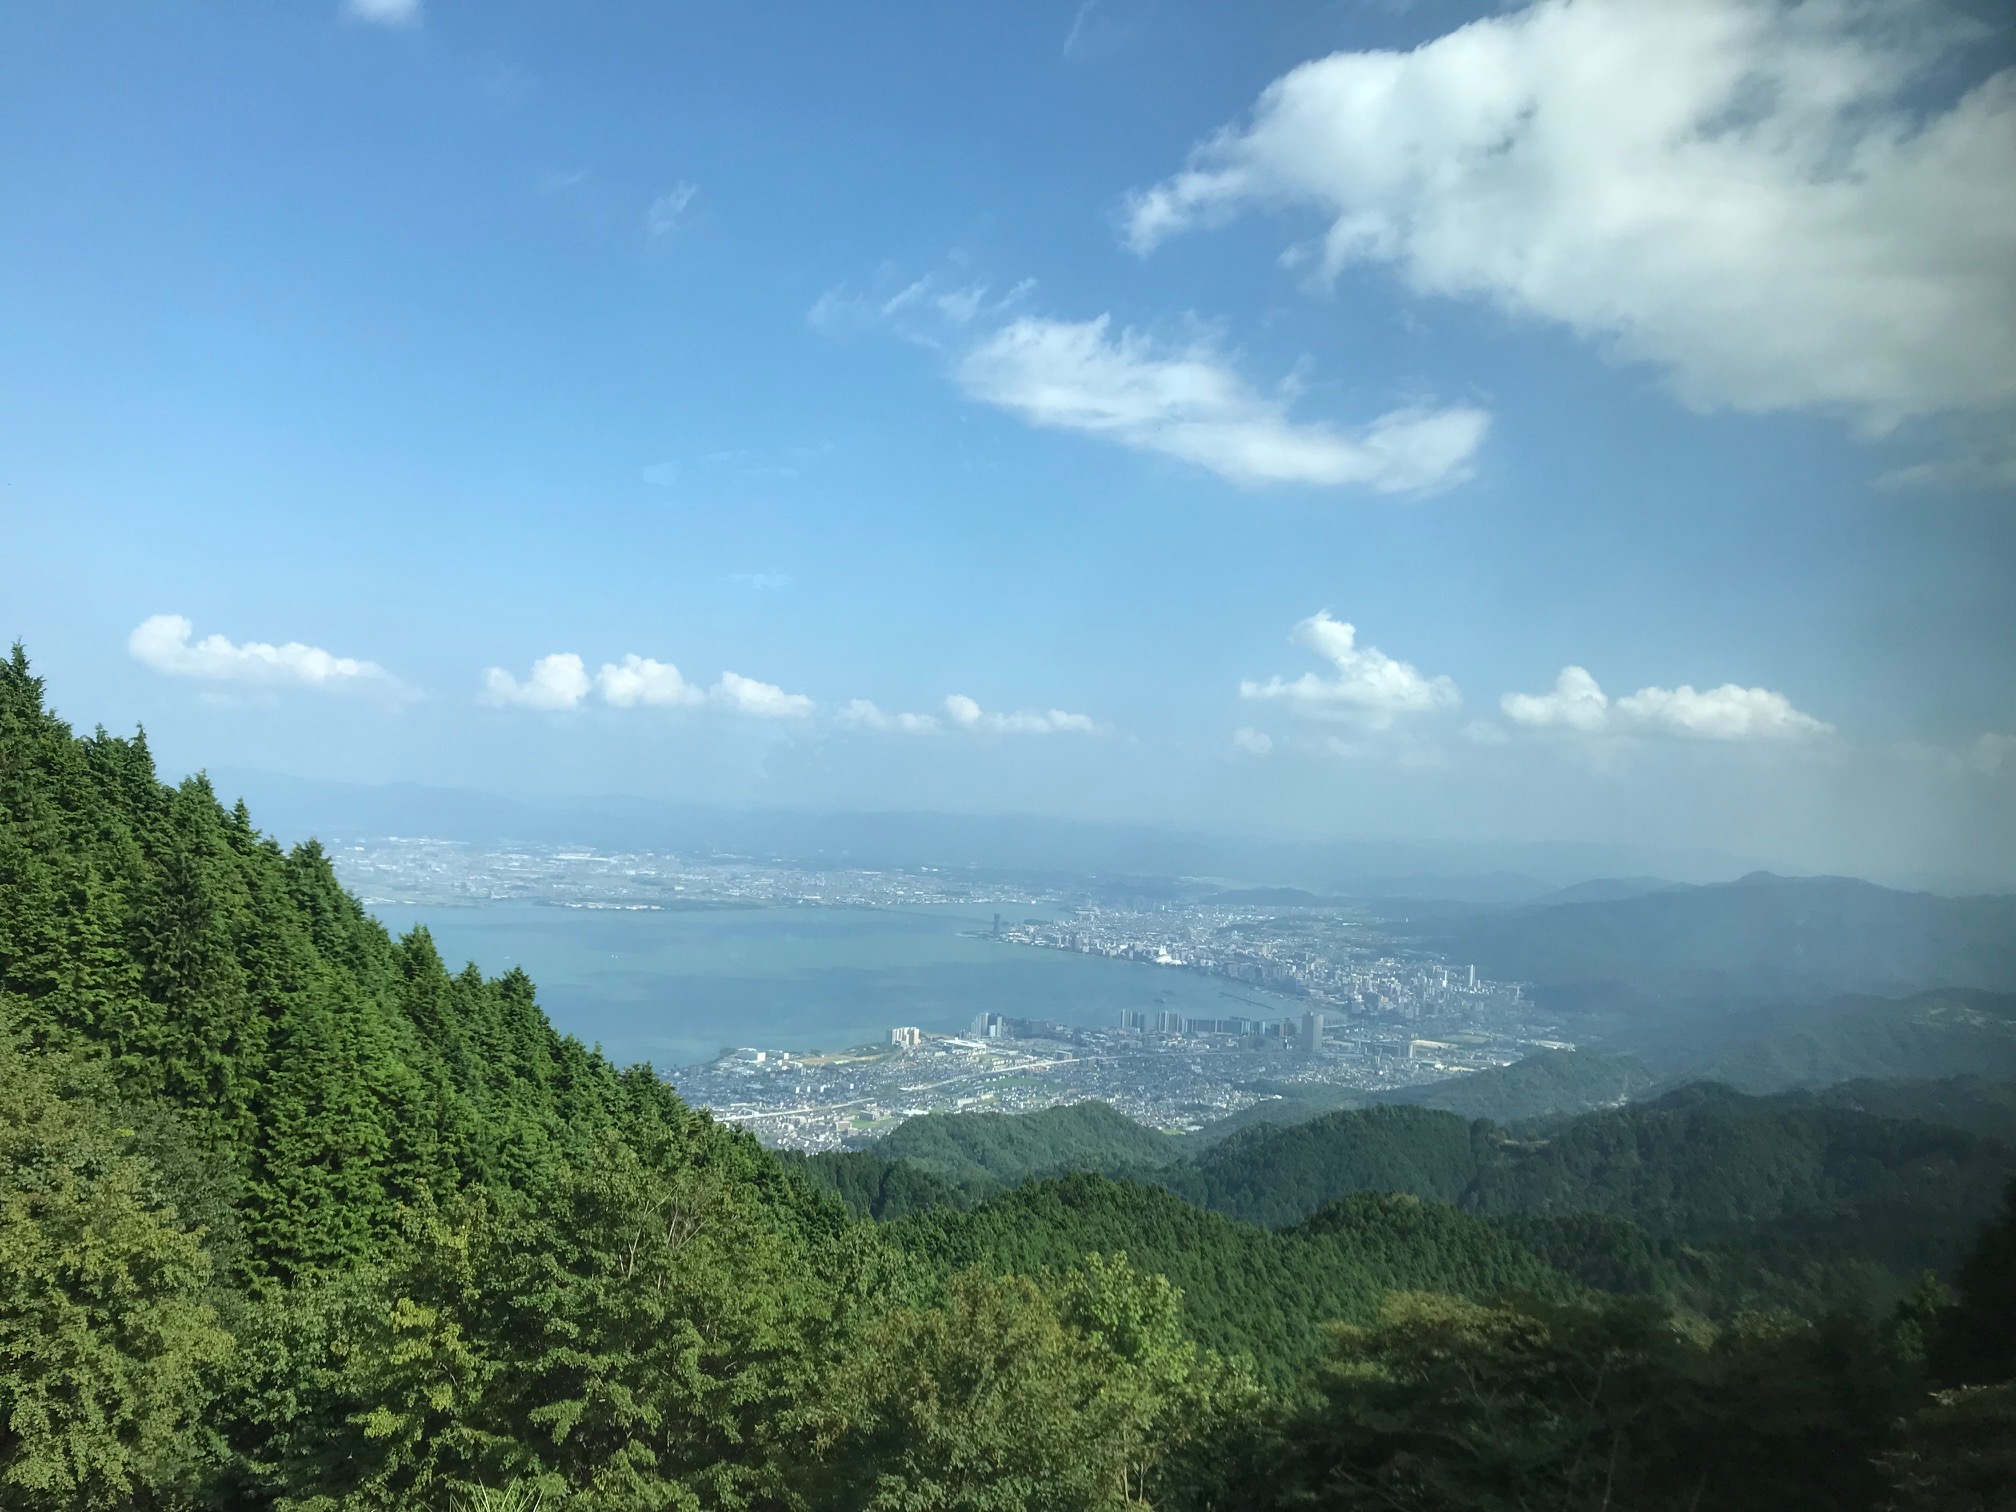 比叡山からの琵琶湖